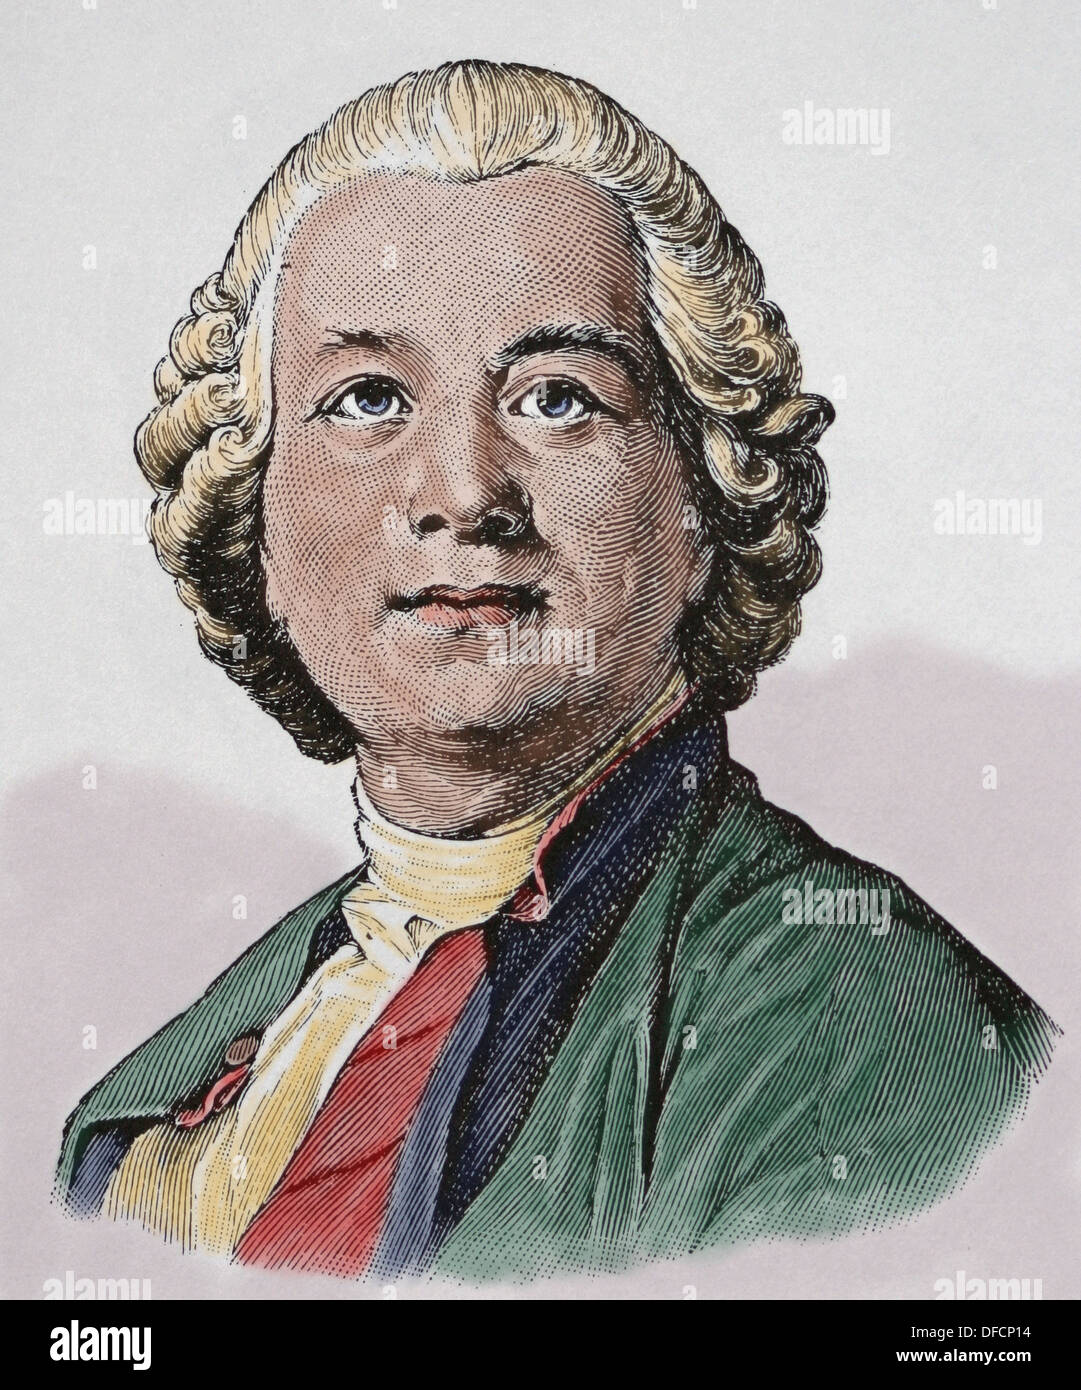 Christoph Willibald Ritter von Gluck (1714 - 1787). Compositeur d'opéra du début de l'époque classique. Gravure en couleur. Banque D'Images